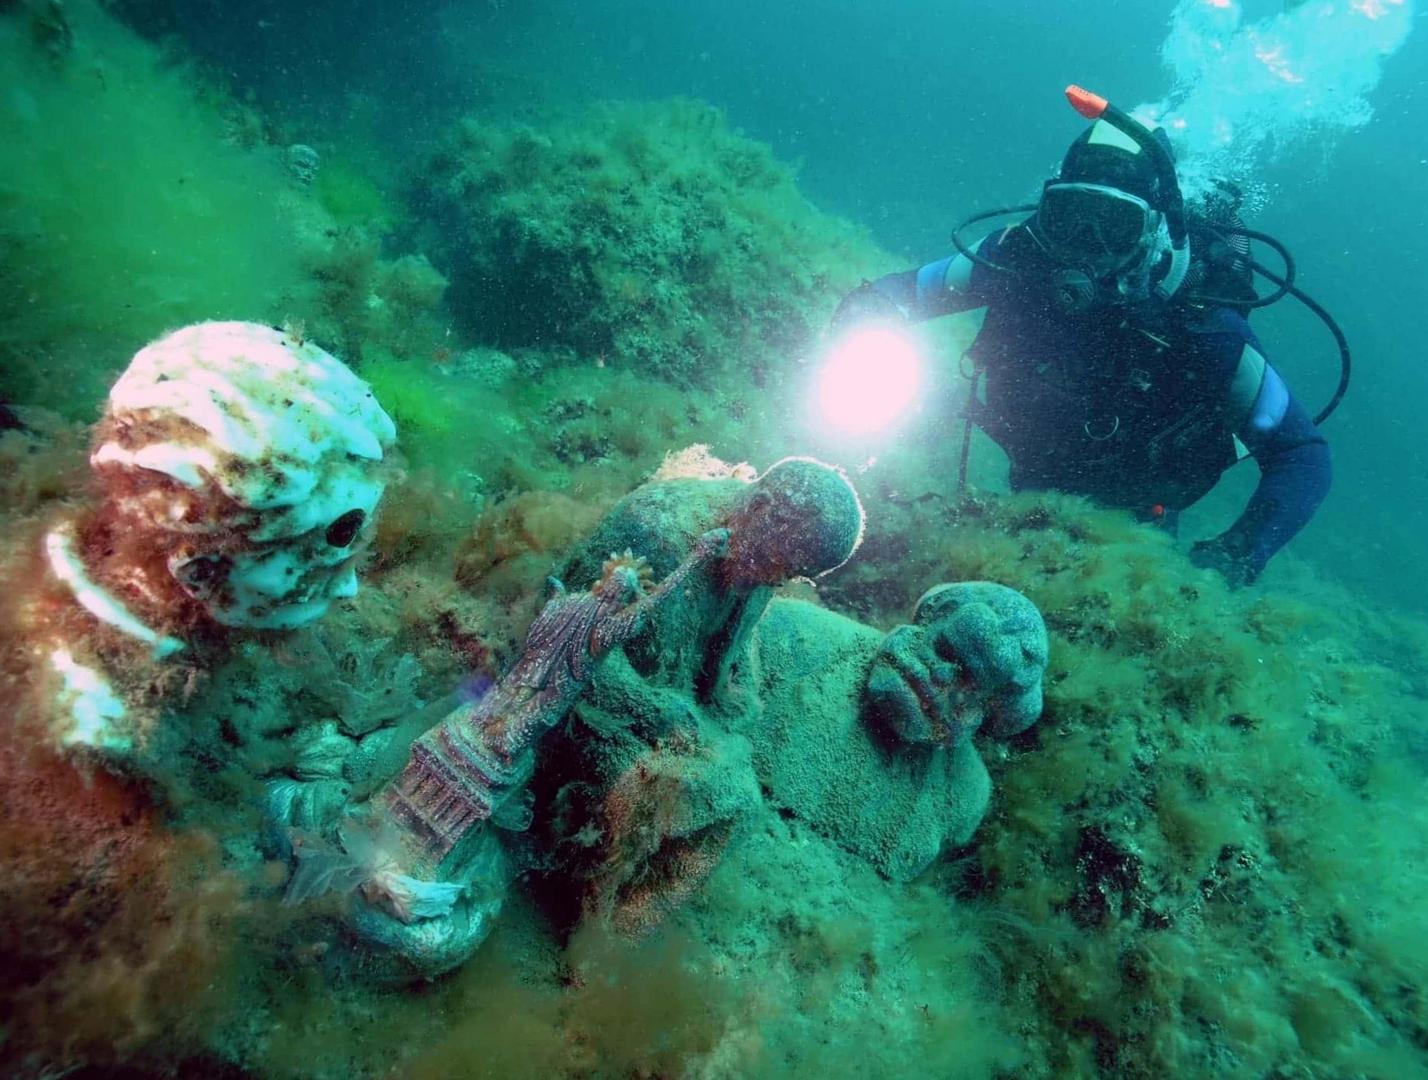  Тур дайвинг Крым: Удивительные подводные пейзажи 